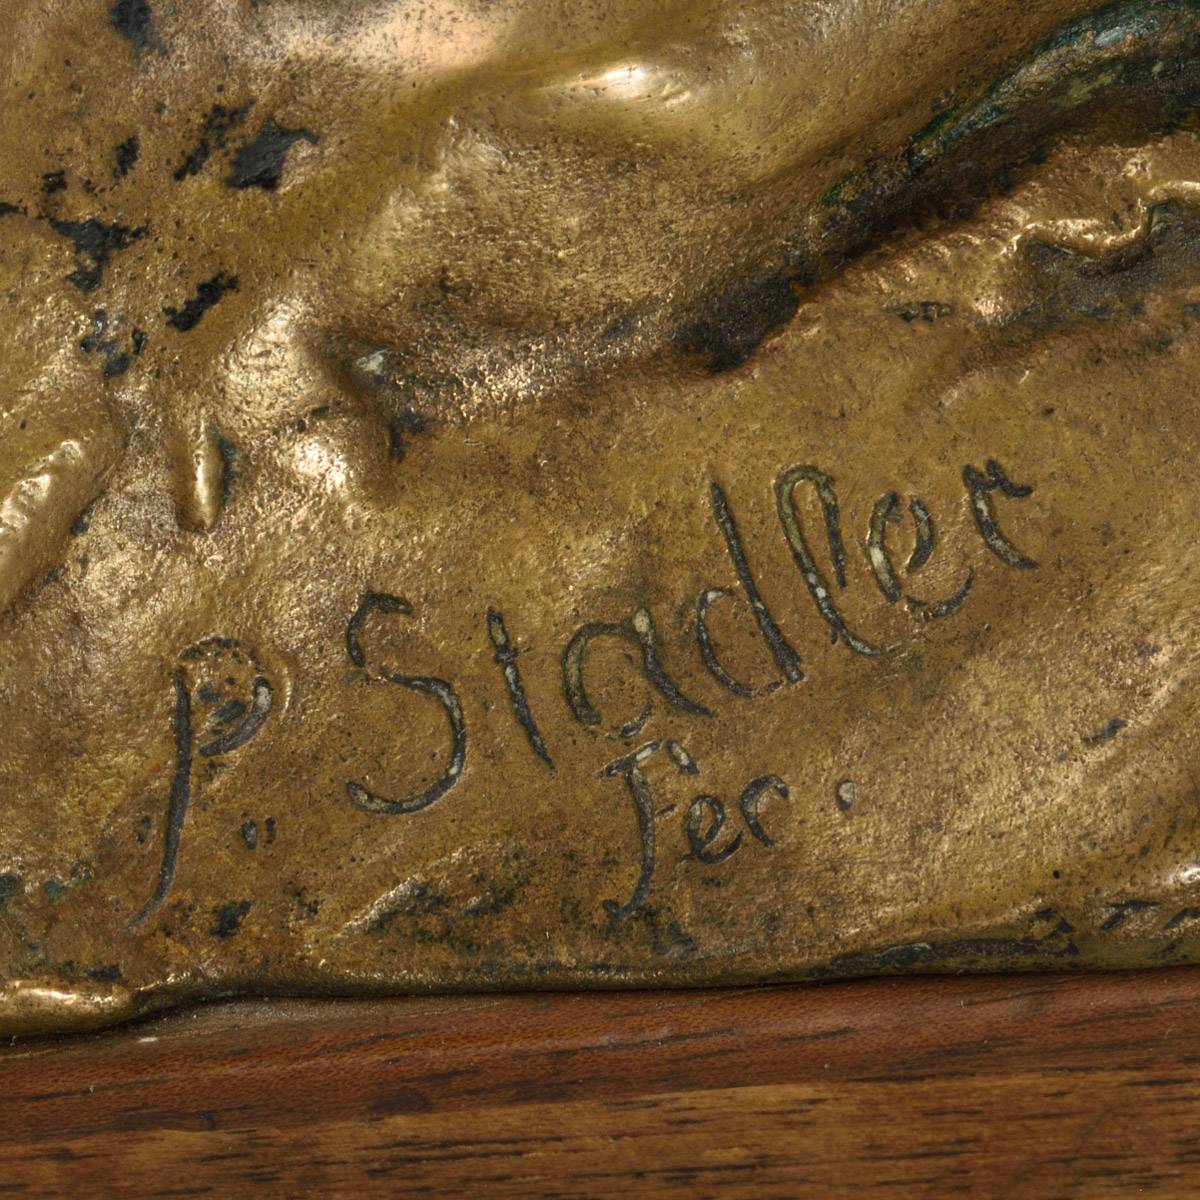 Пресс-папье «В волнах» из бронзы 19 века (P. Stadler)